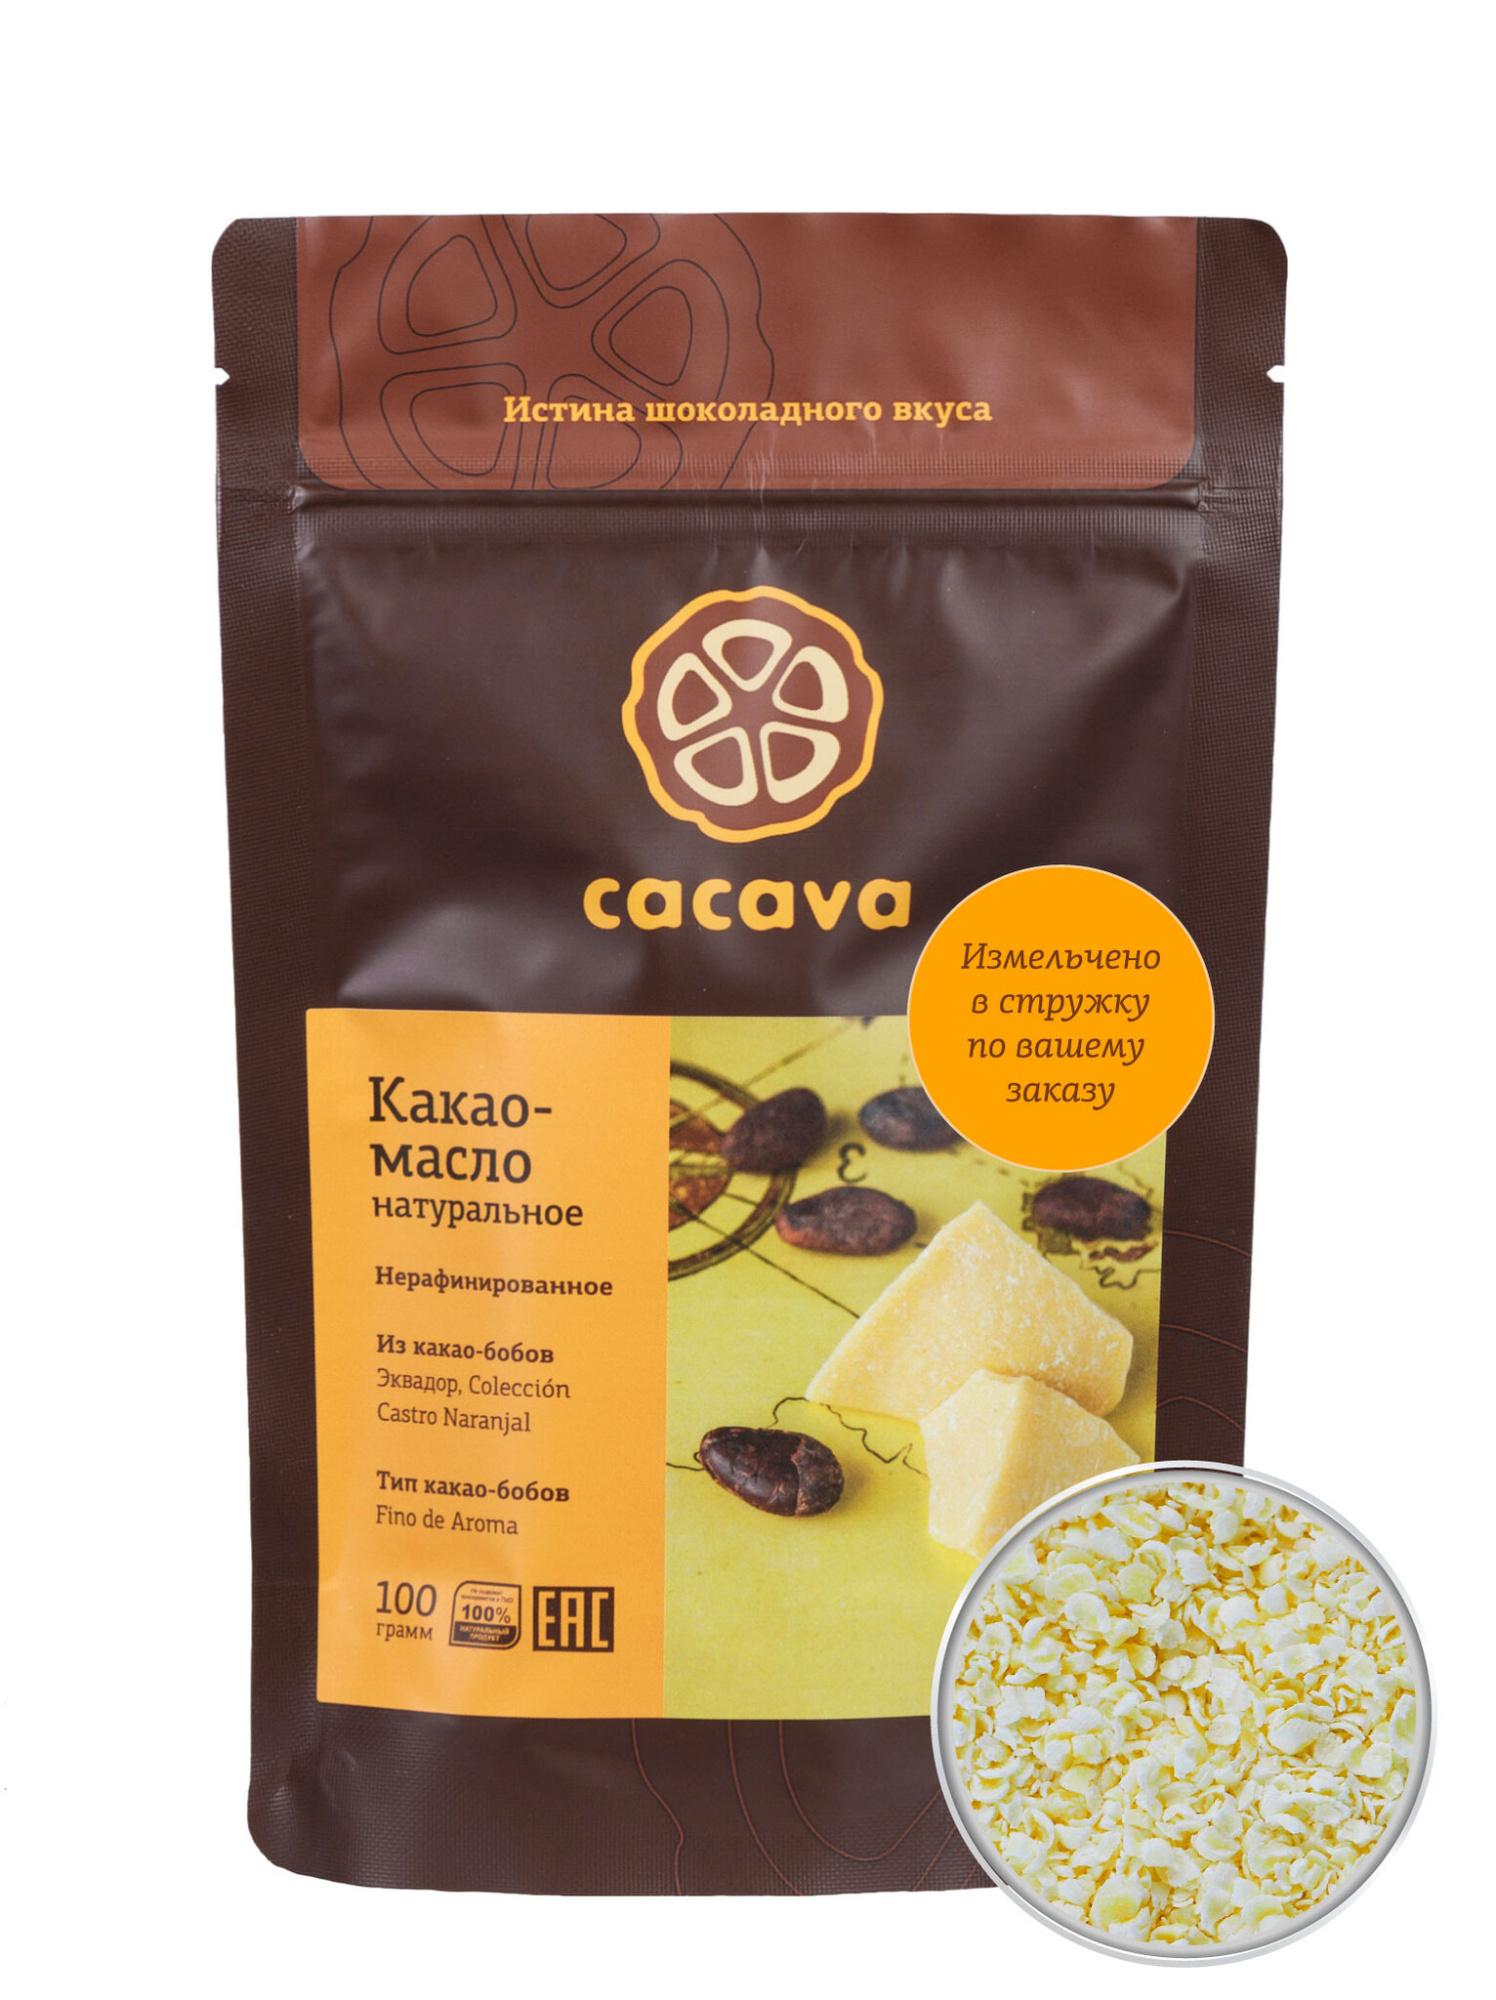 Какао-масло натуральное нерафинированное (Эквадор)  стружка 100г купить